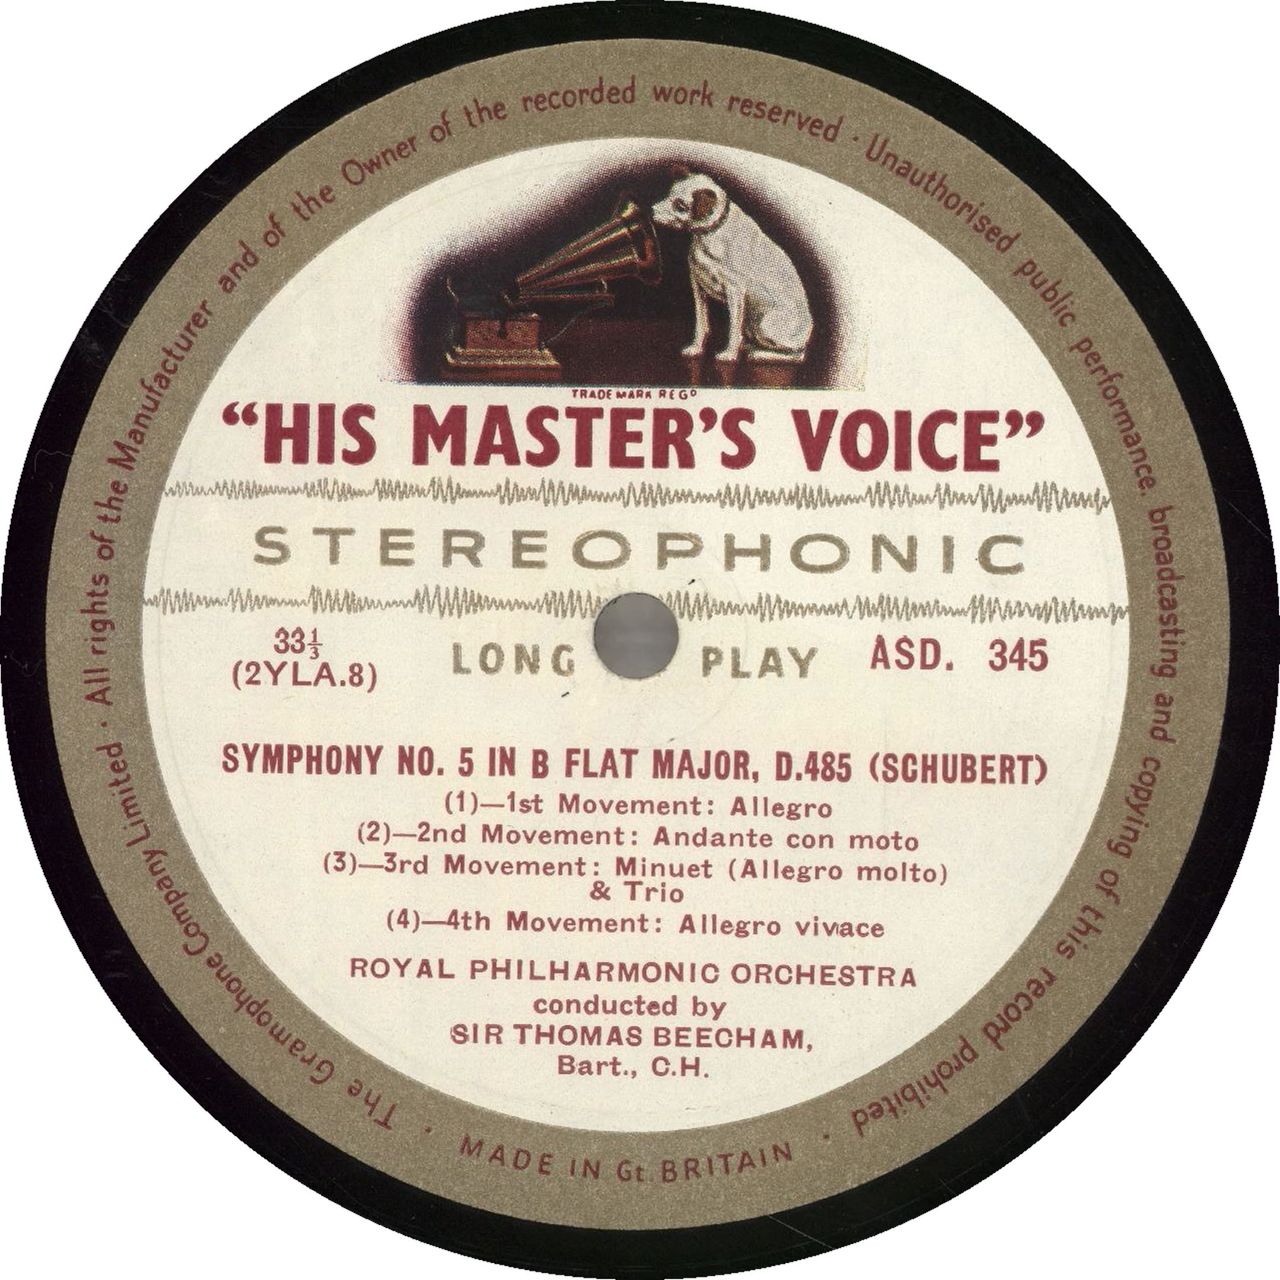 Symphonies　And　Franz　UK　Schubert　Vinyl　Nos.　1st　LP　—